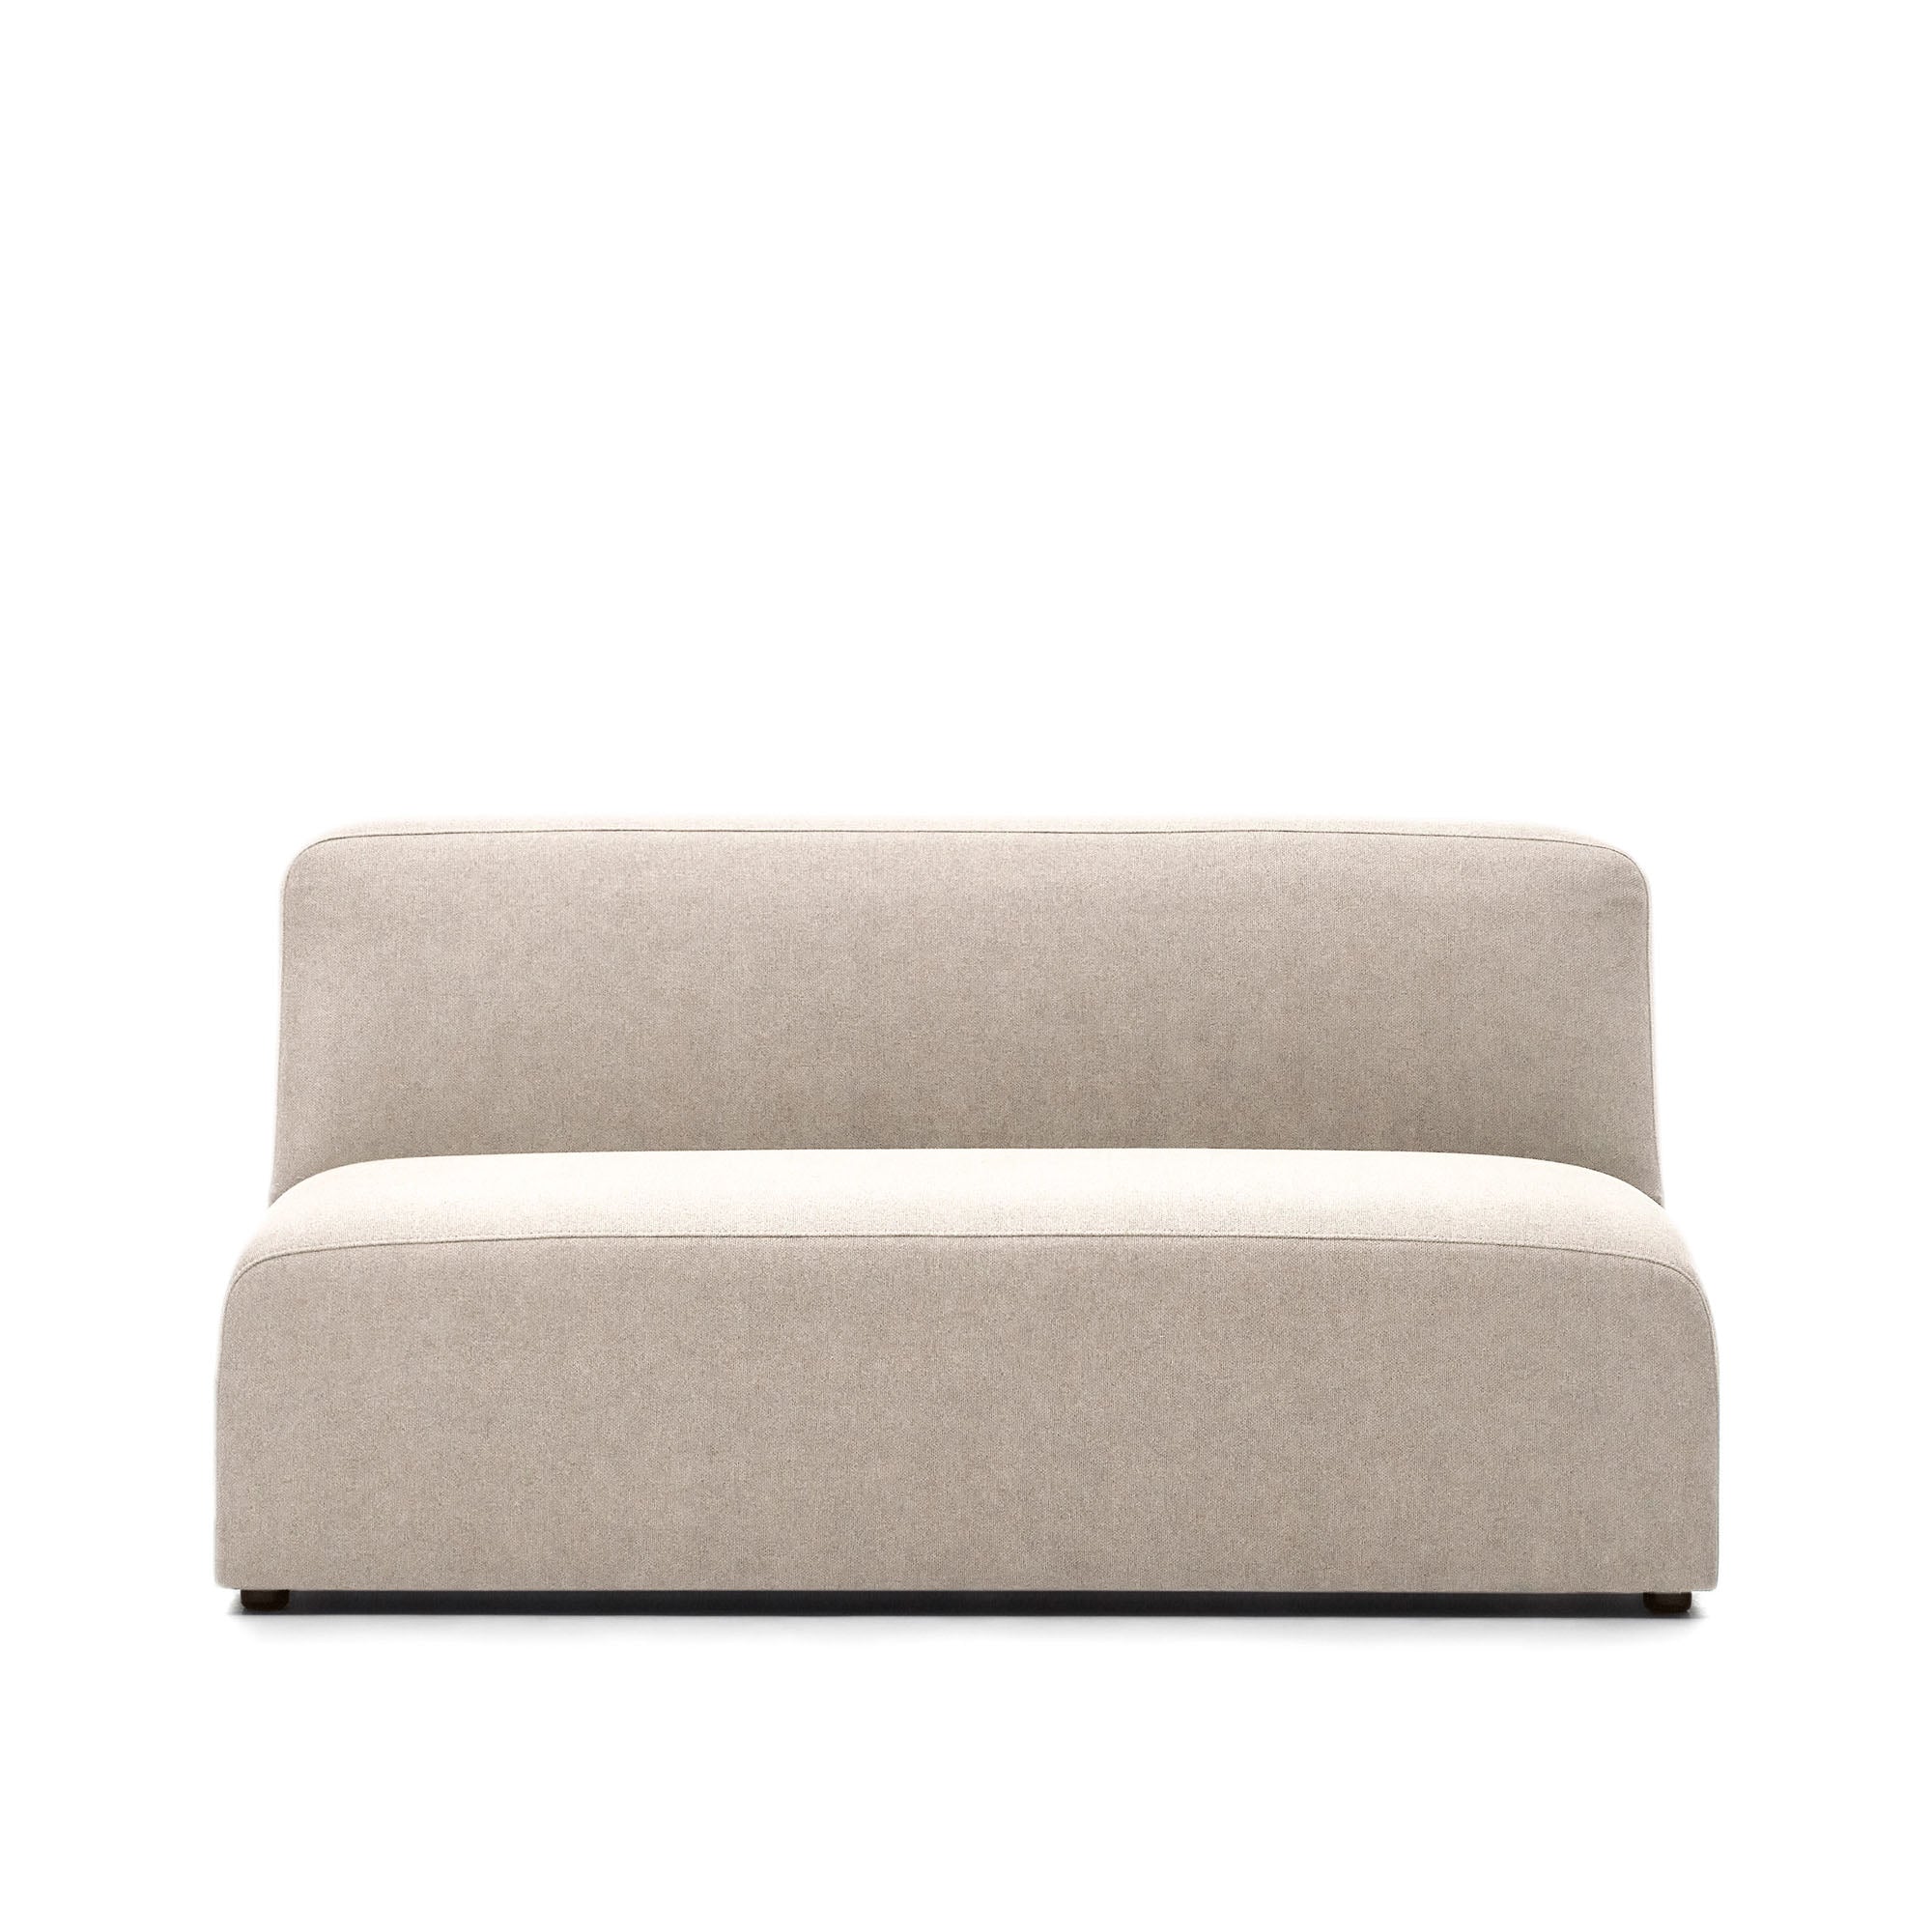 2 seater sofa module in beige, 150 cm